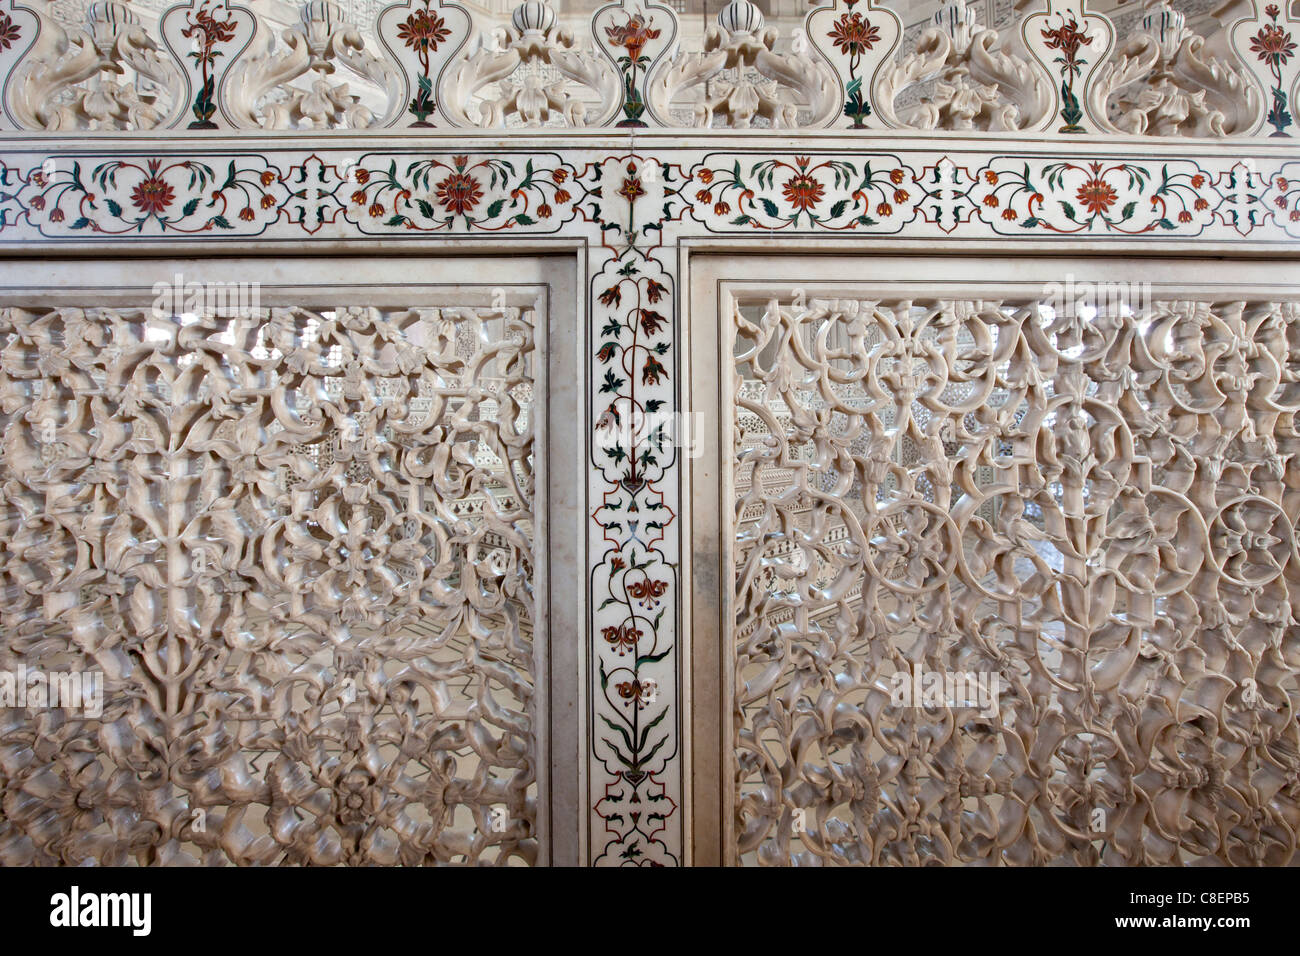 The Taj Mahal Mausoleum Detail Of Pietra Dura Jewels Inlaid